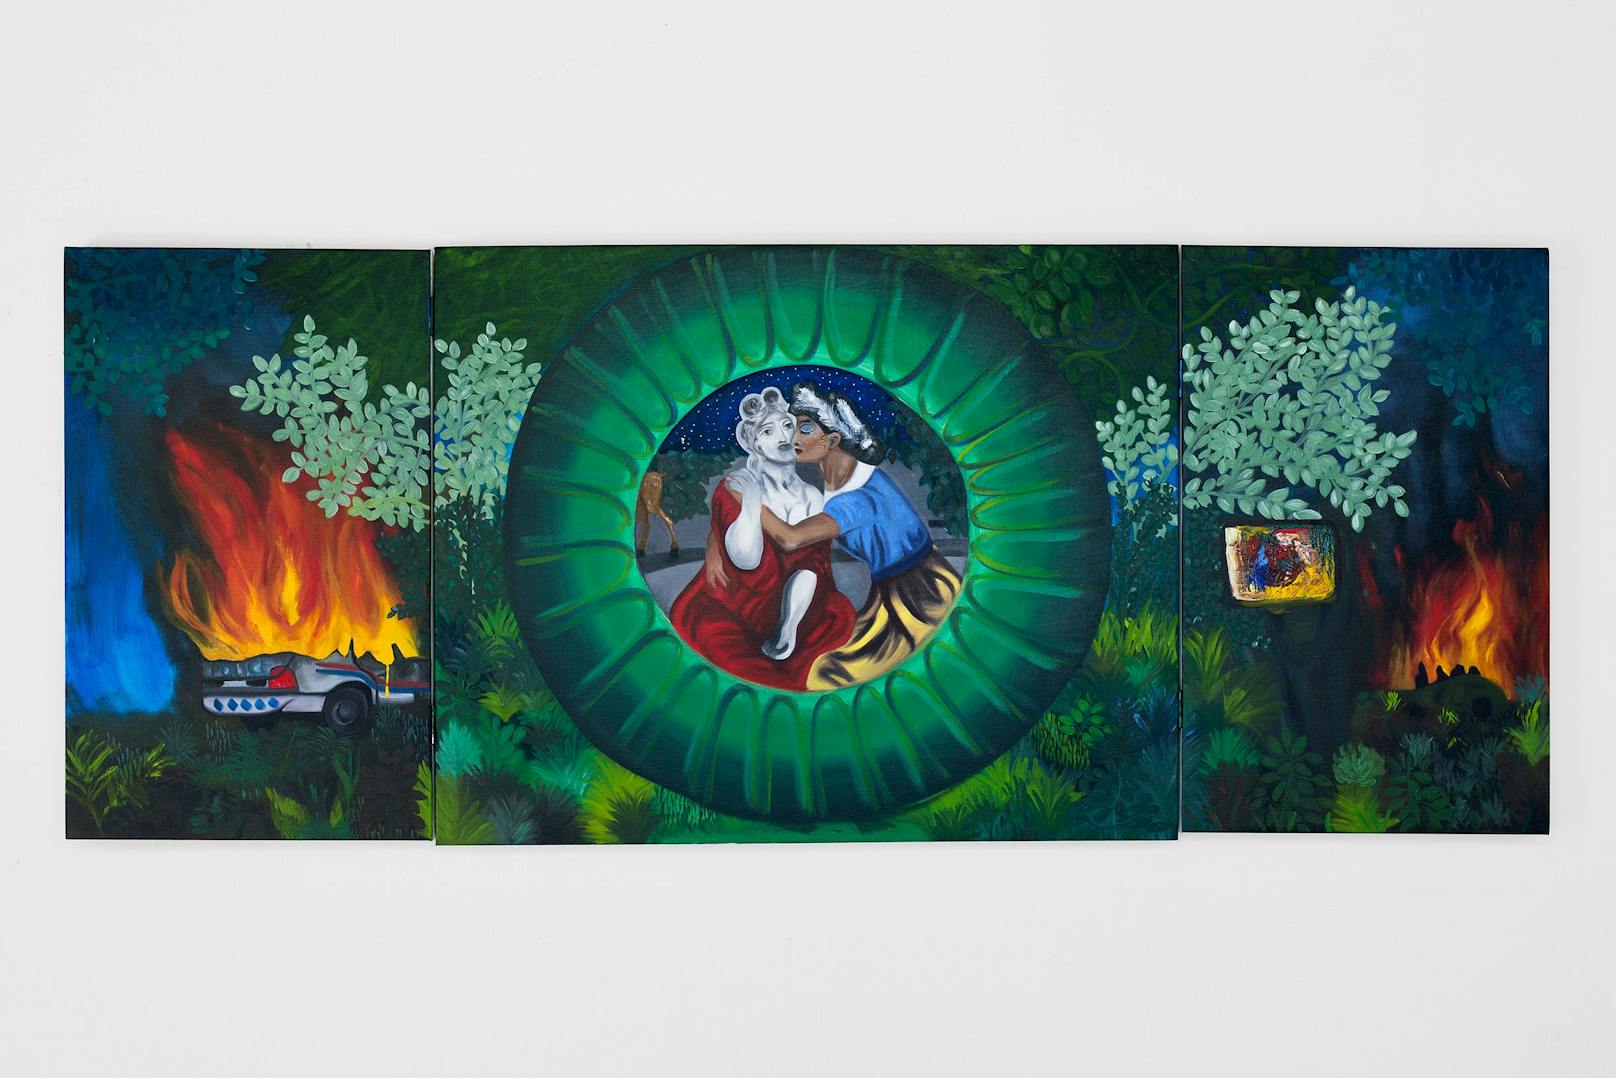 Frieda Toranzo Jaeger Allegorie auf die Geschichte nach Sappho,2020 Oil on canvas 80 x 198 cm | 31 1/2 x 78 inCourtesy of the artist and Galerie Barbara Weiss, Berlin